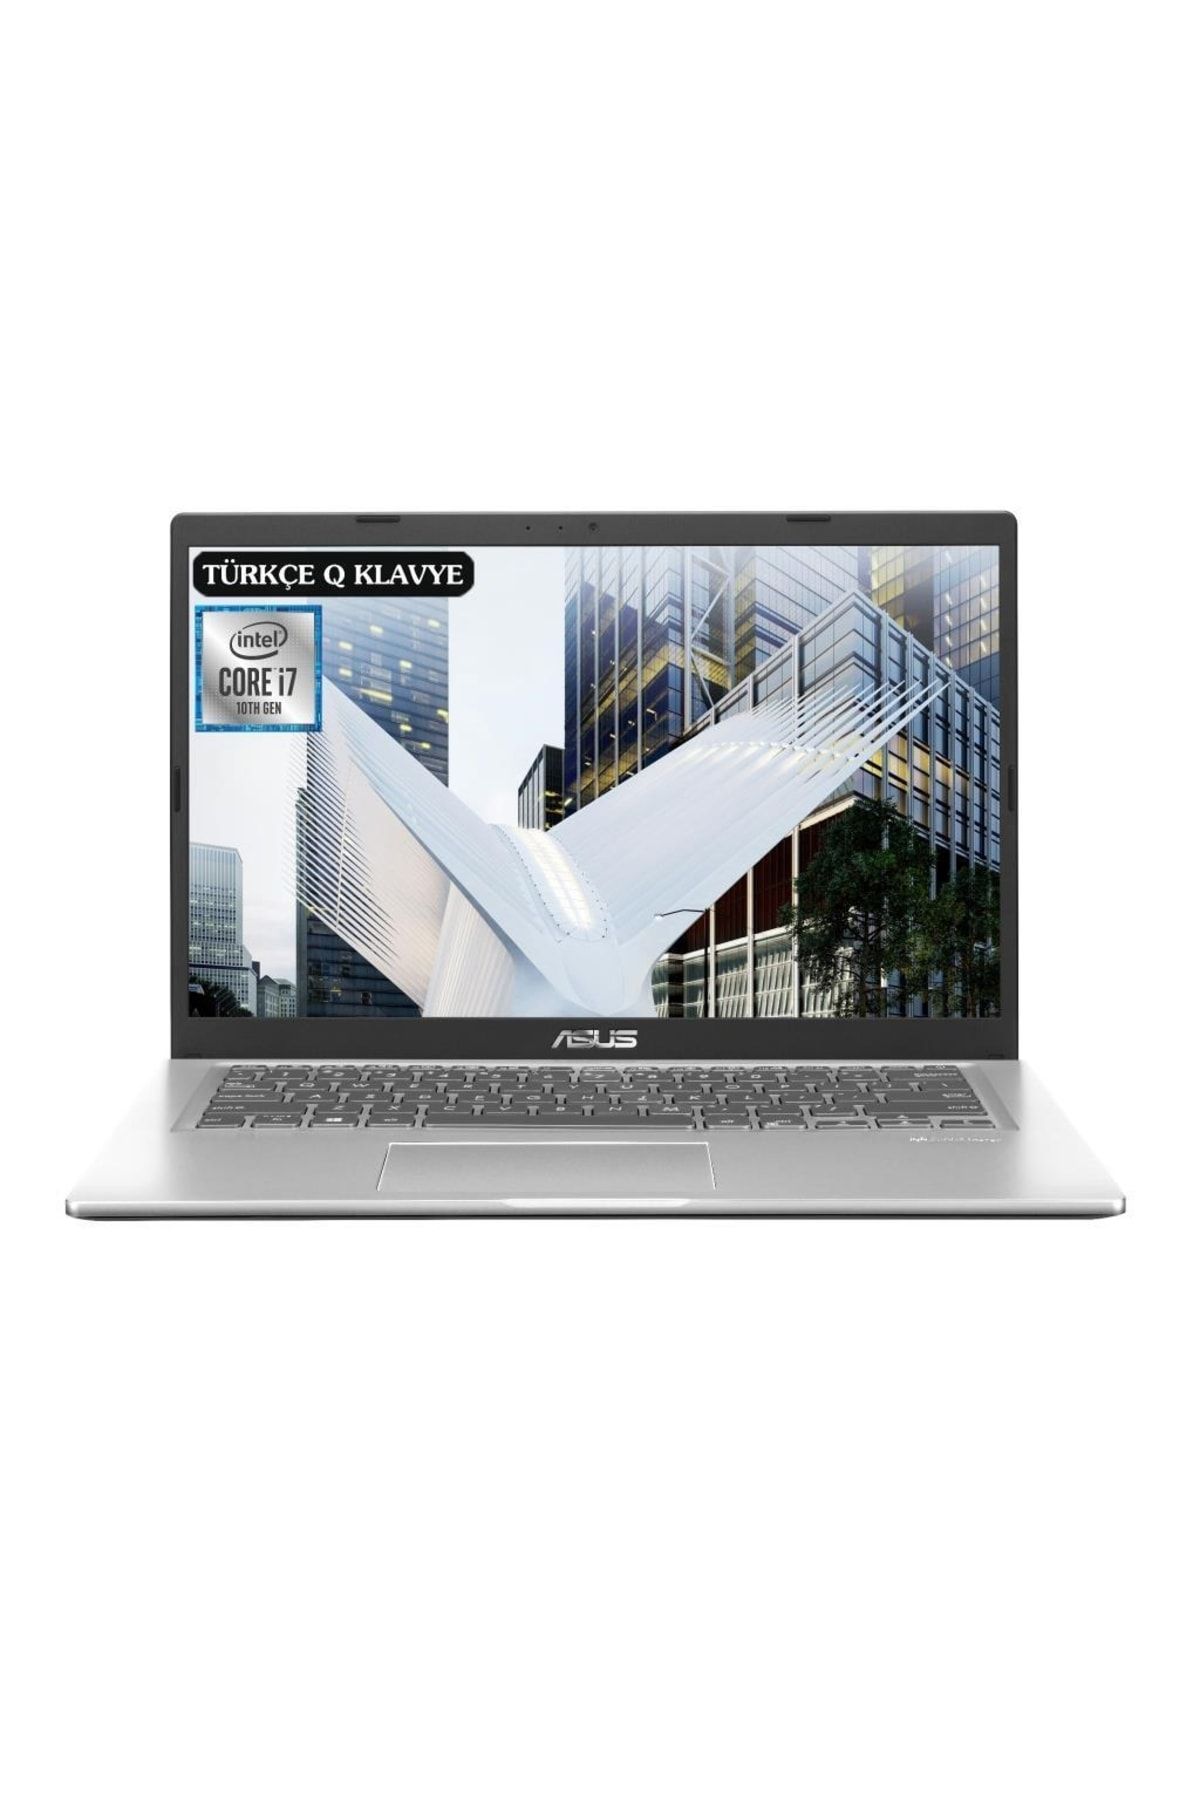 ASUS Vivobook X415ja-ek1654a7 I7-1065g7 40gb 512ssd 14" Fullhd Freedos Taşınabilir Bilgisayar